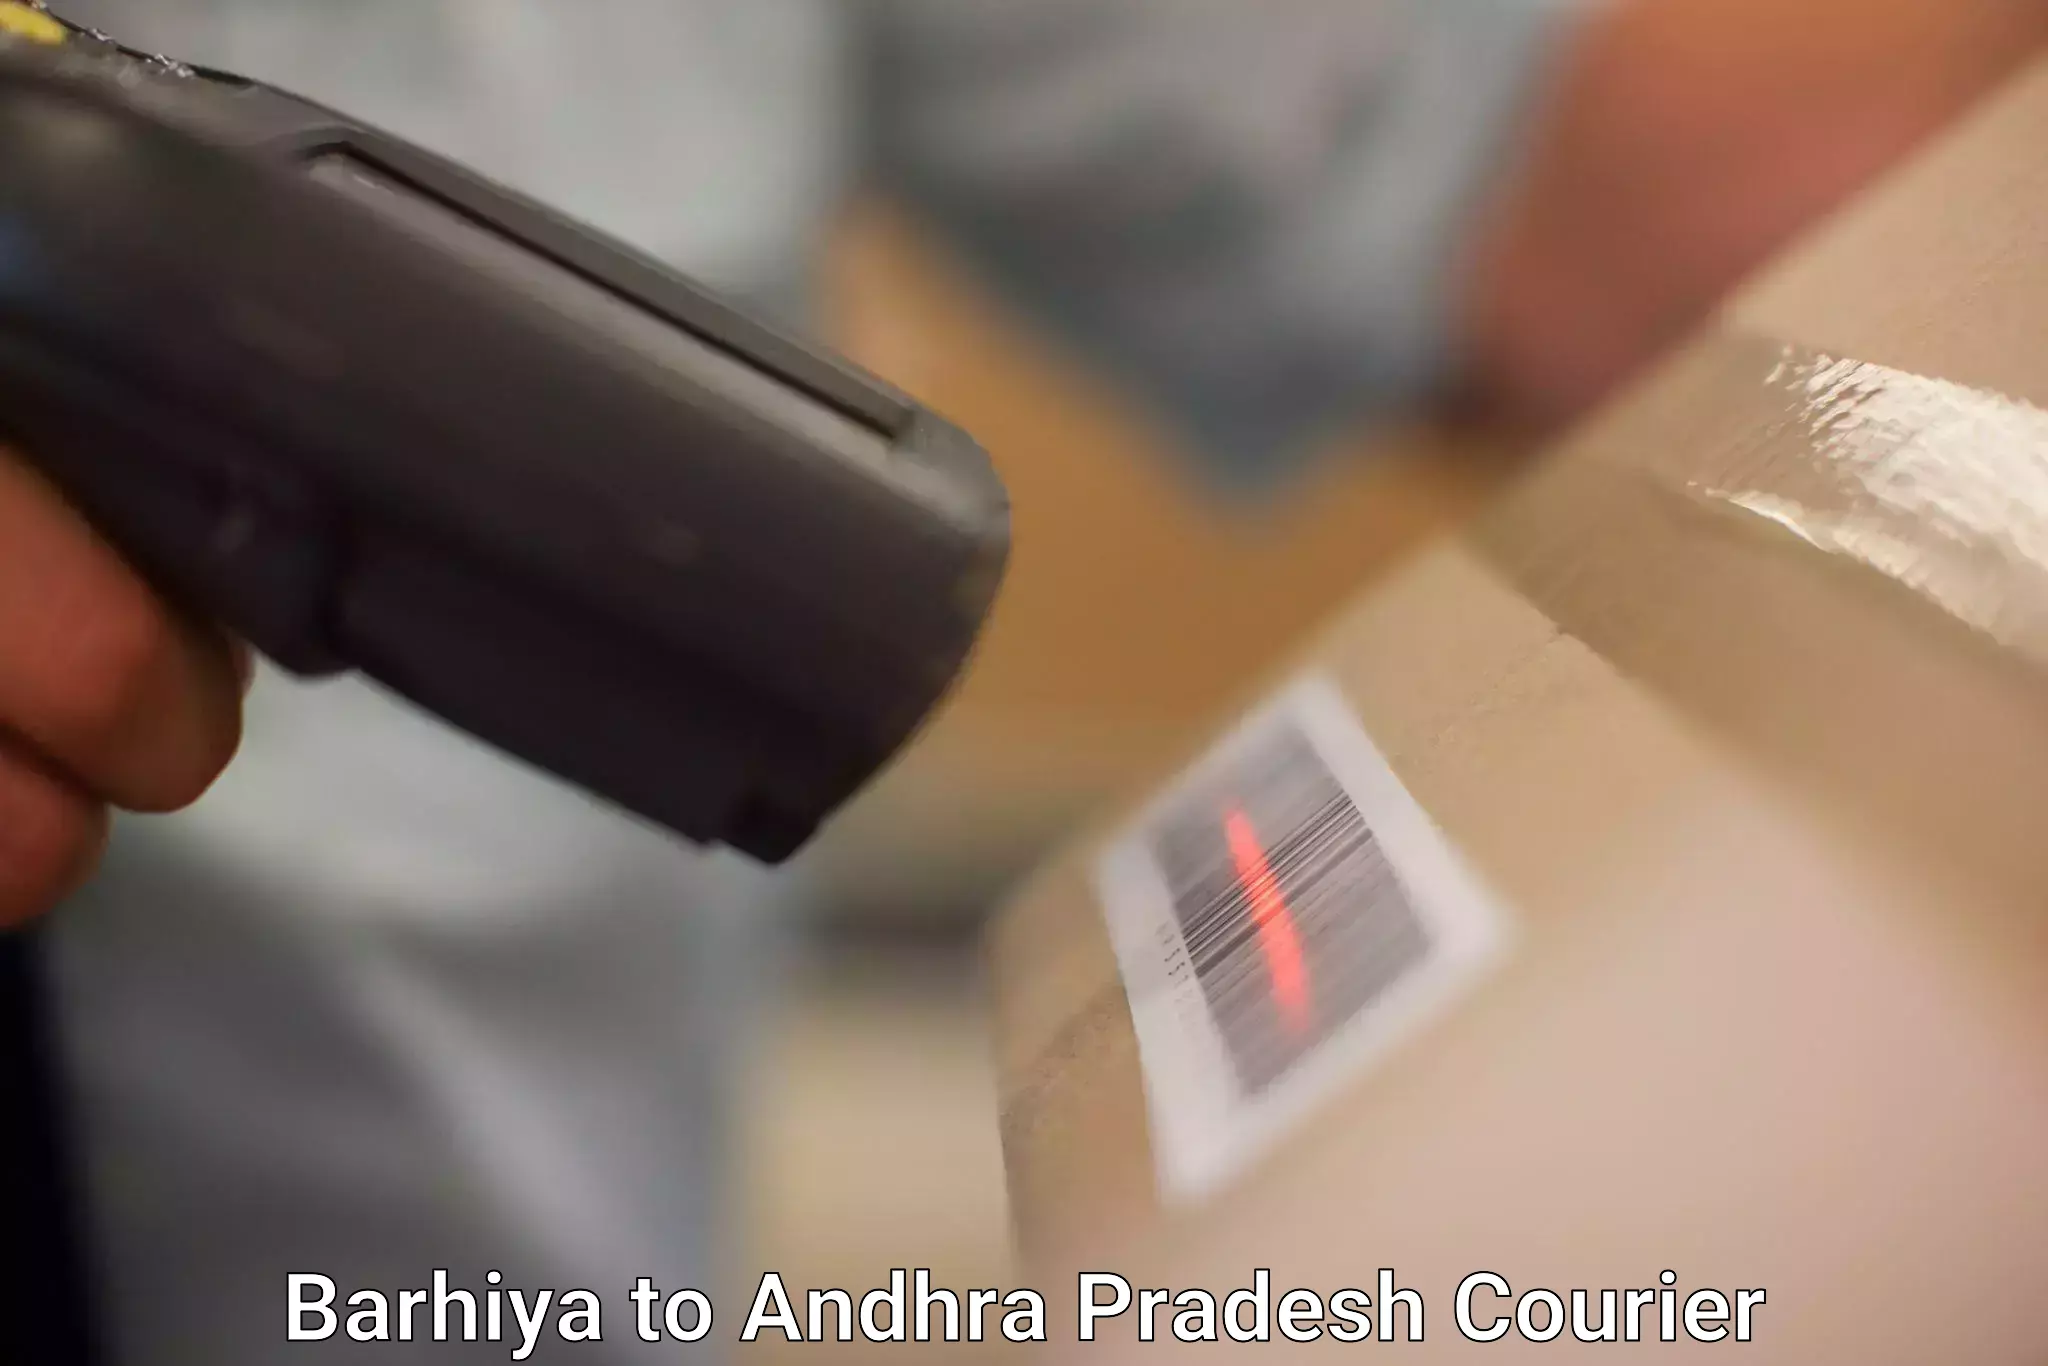 On-demand shipping options Barhiya to Andhra Pradesh